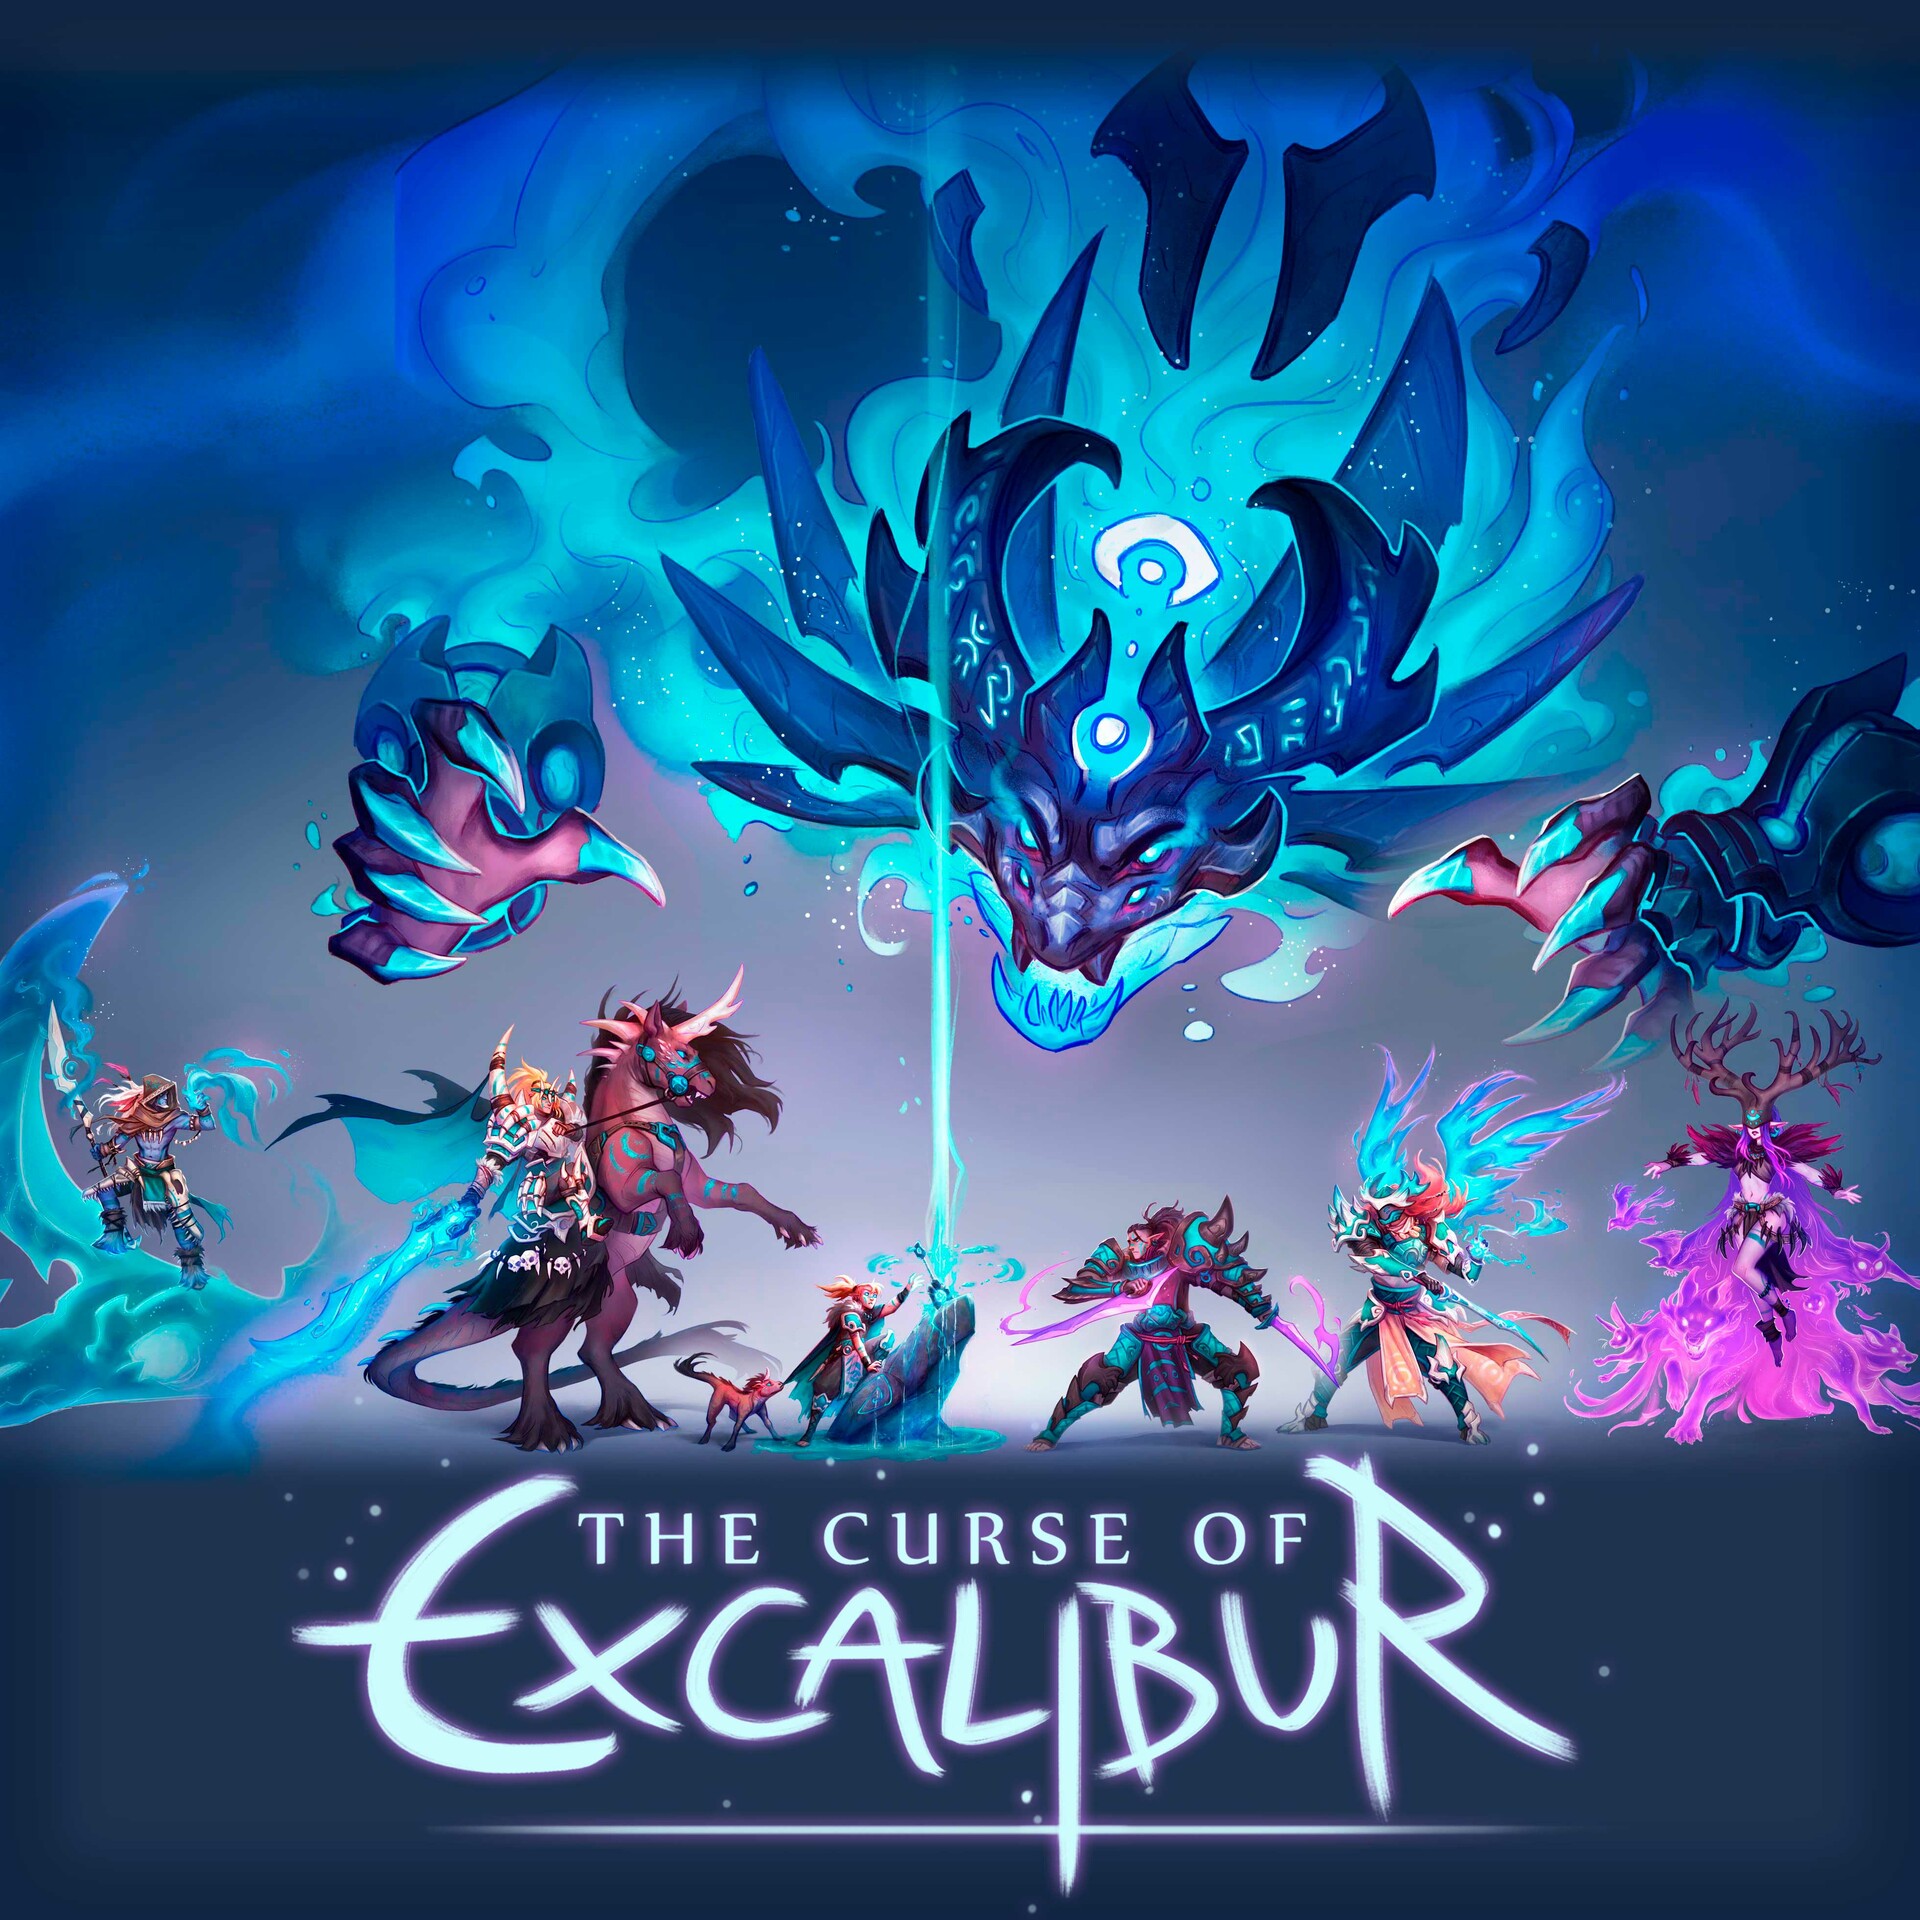 The Excalibur Curse by Kiersten White